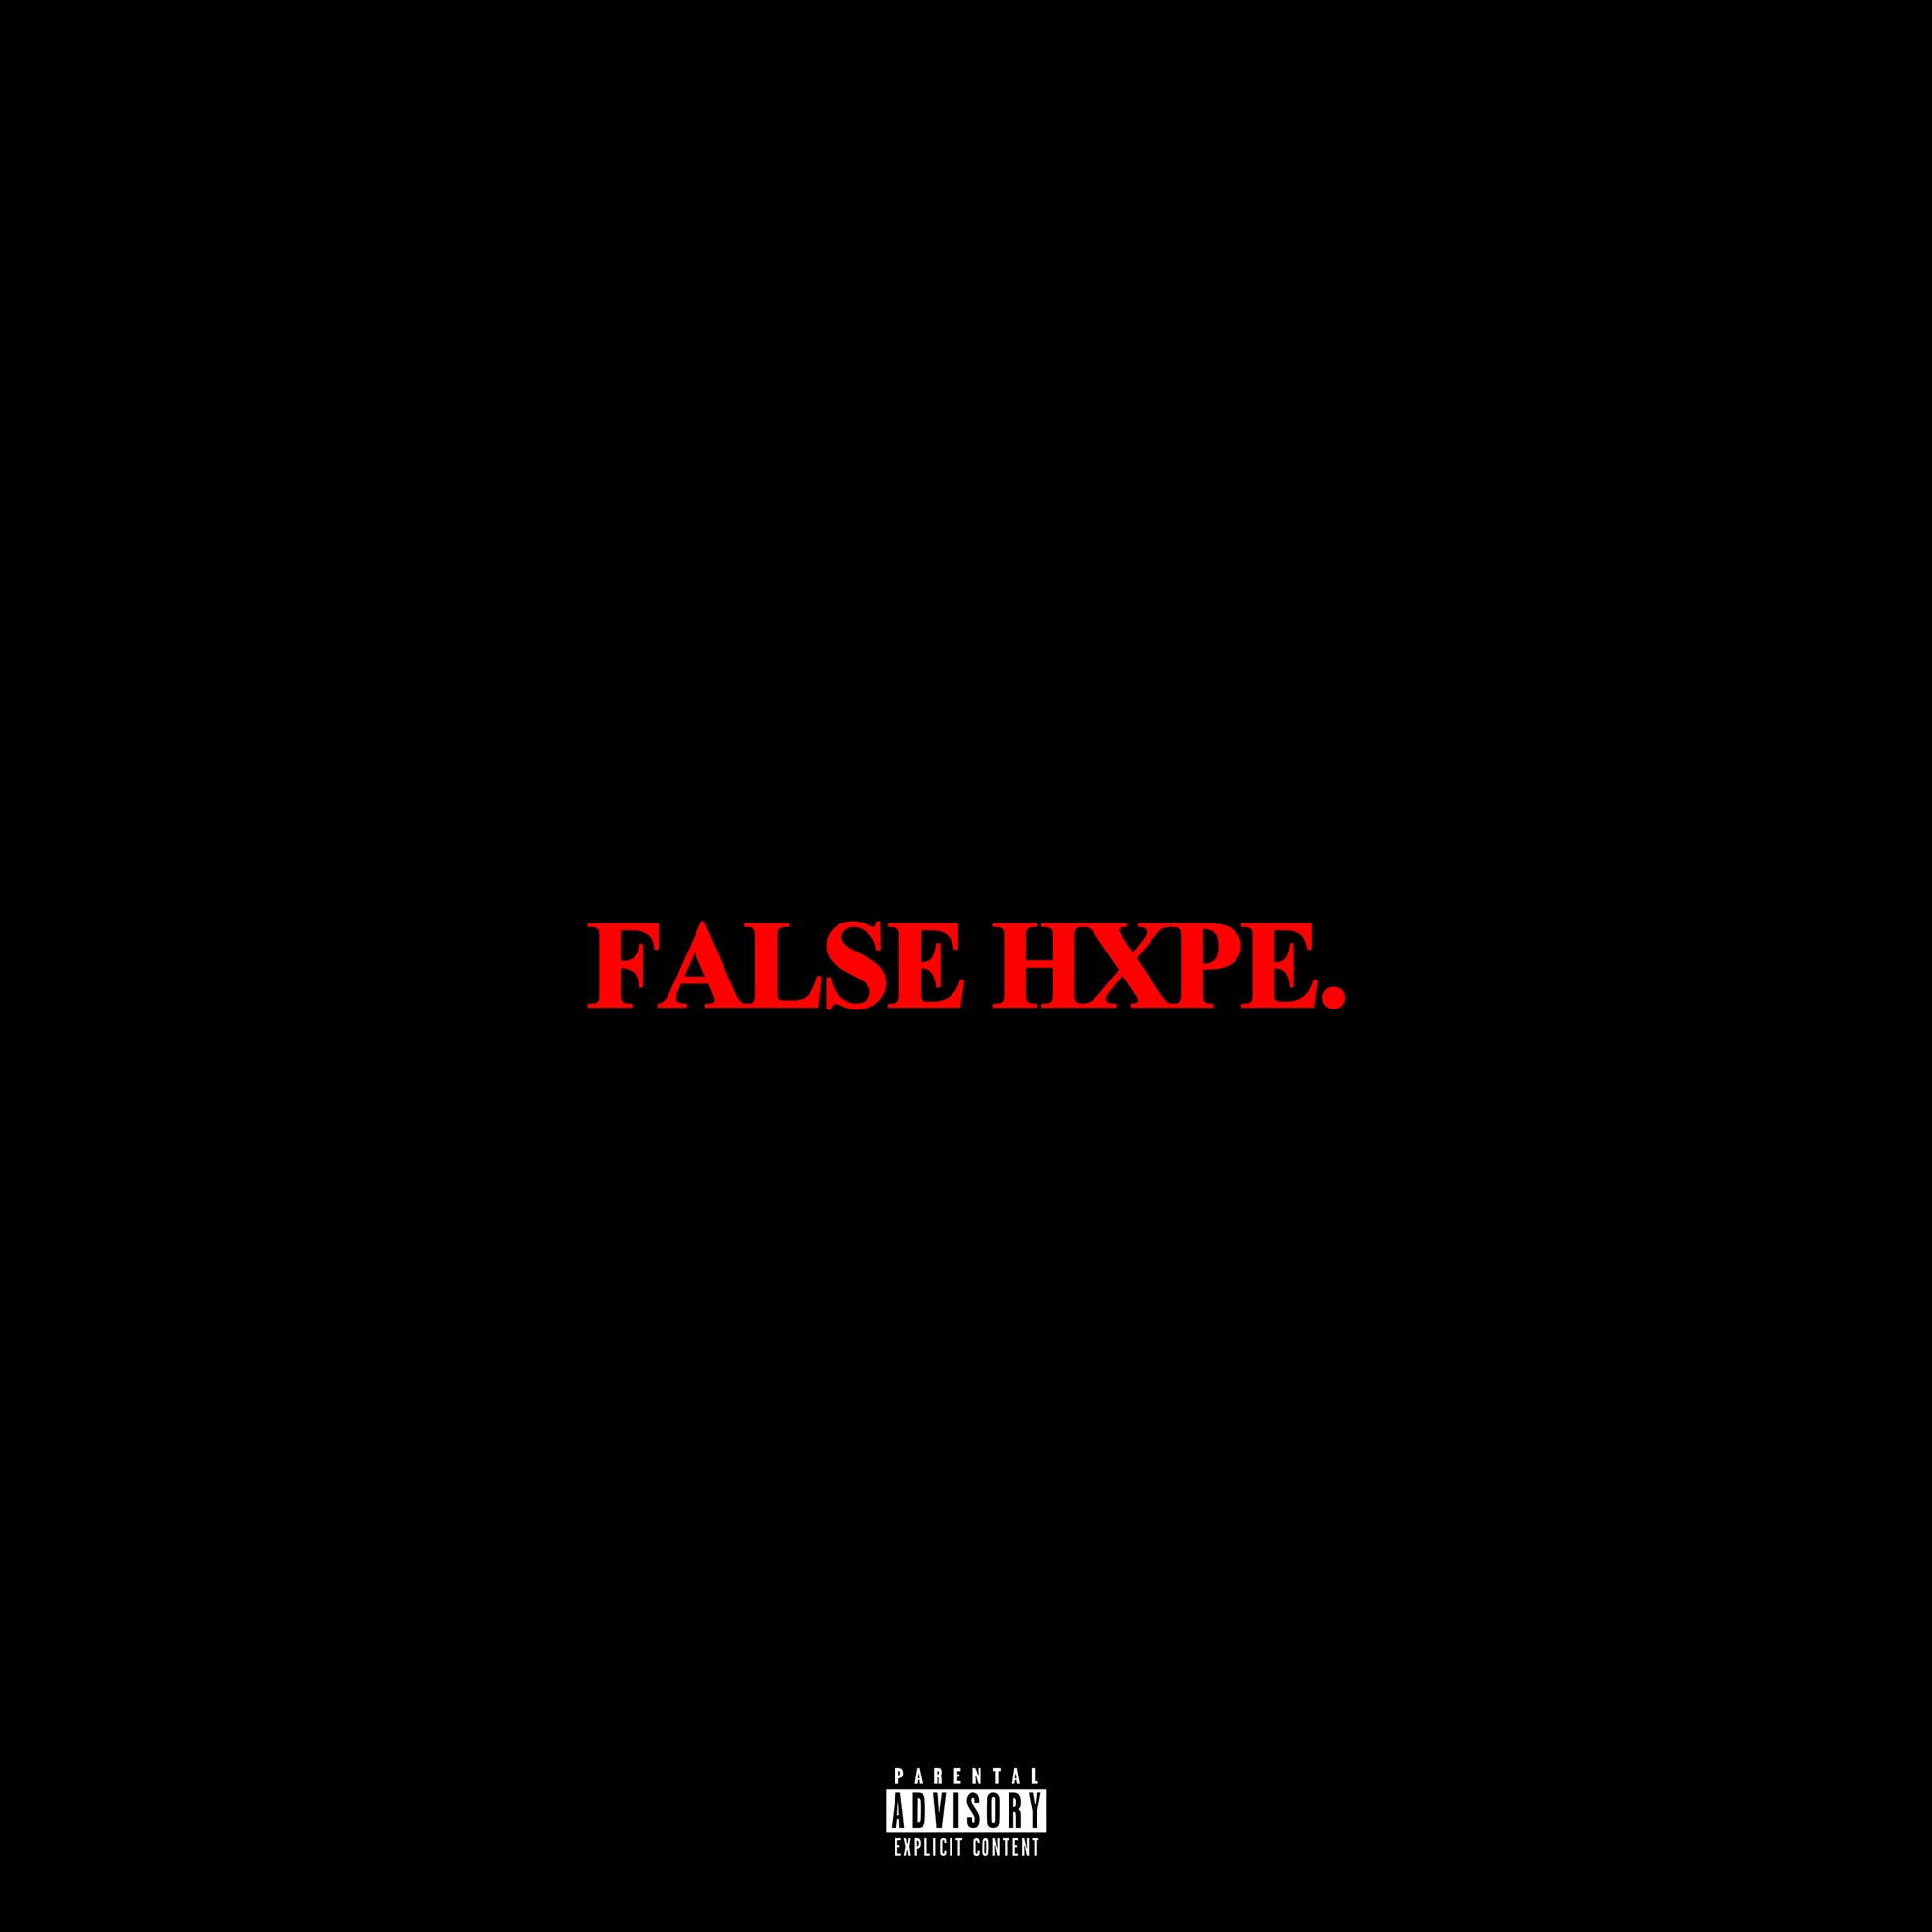 Scarlxrd - False Hxpe. - Single